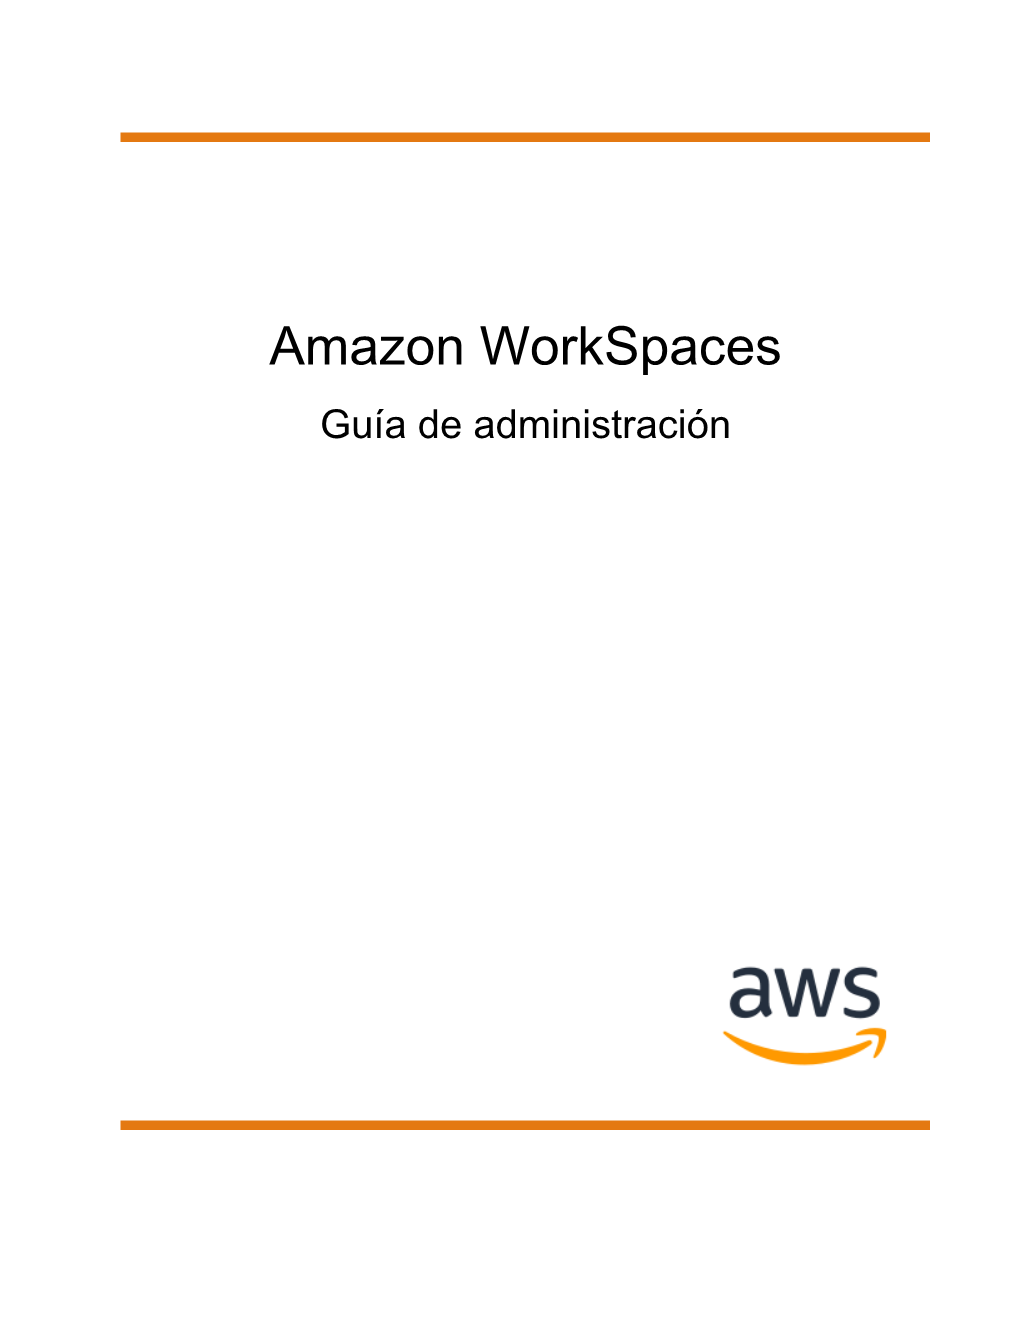 Amazon Workspaces Guía De Administración Amazon Workspaces Guía De Administración